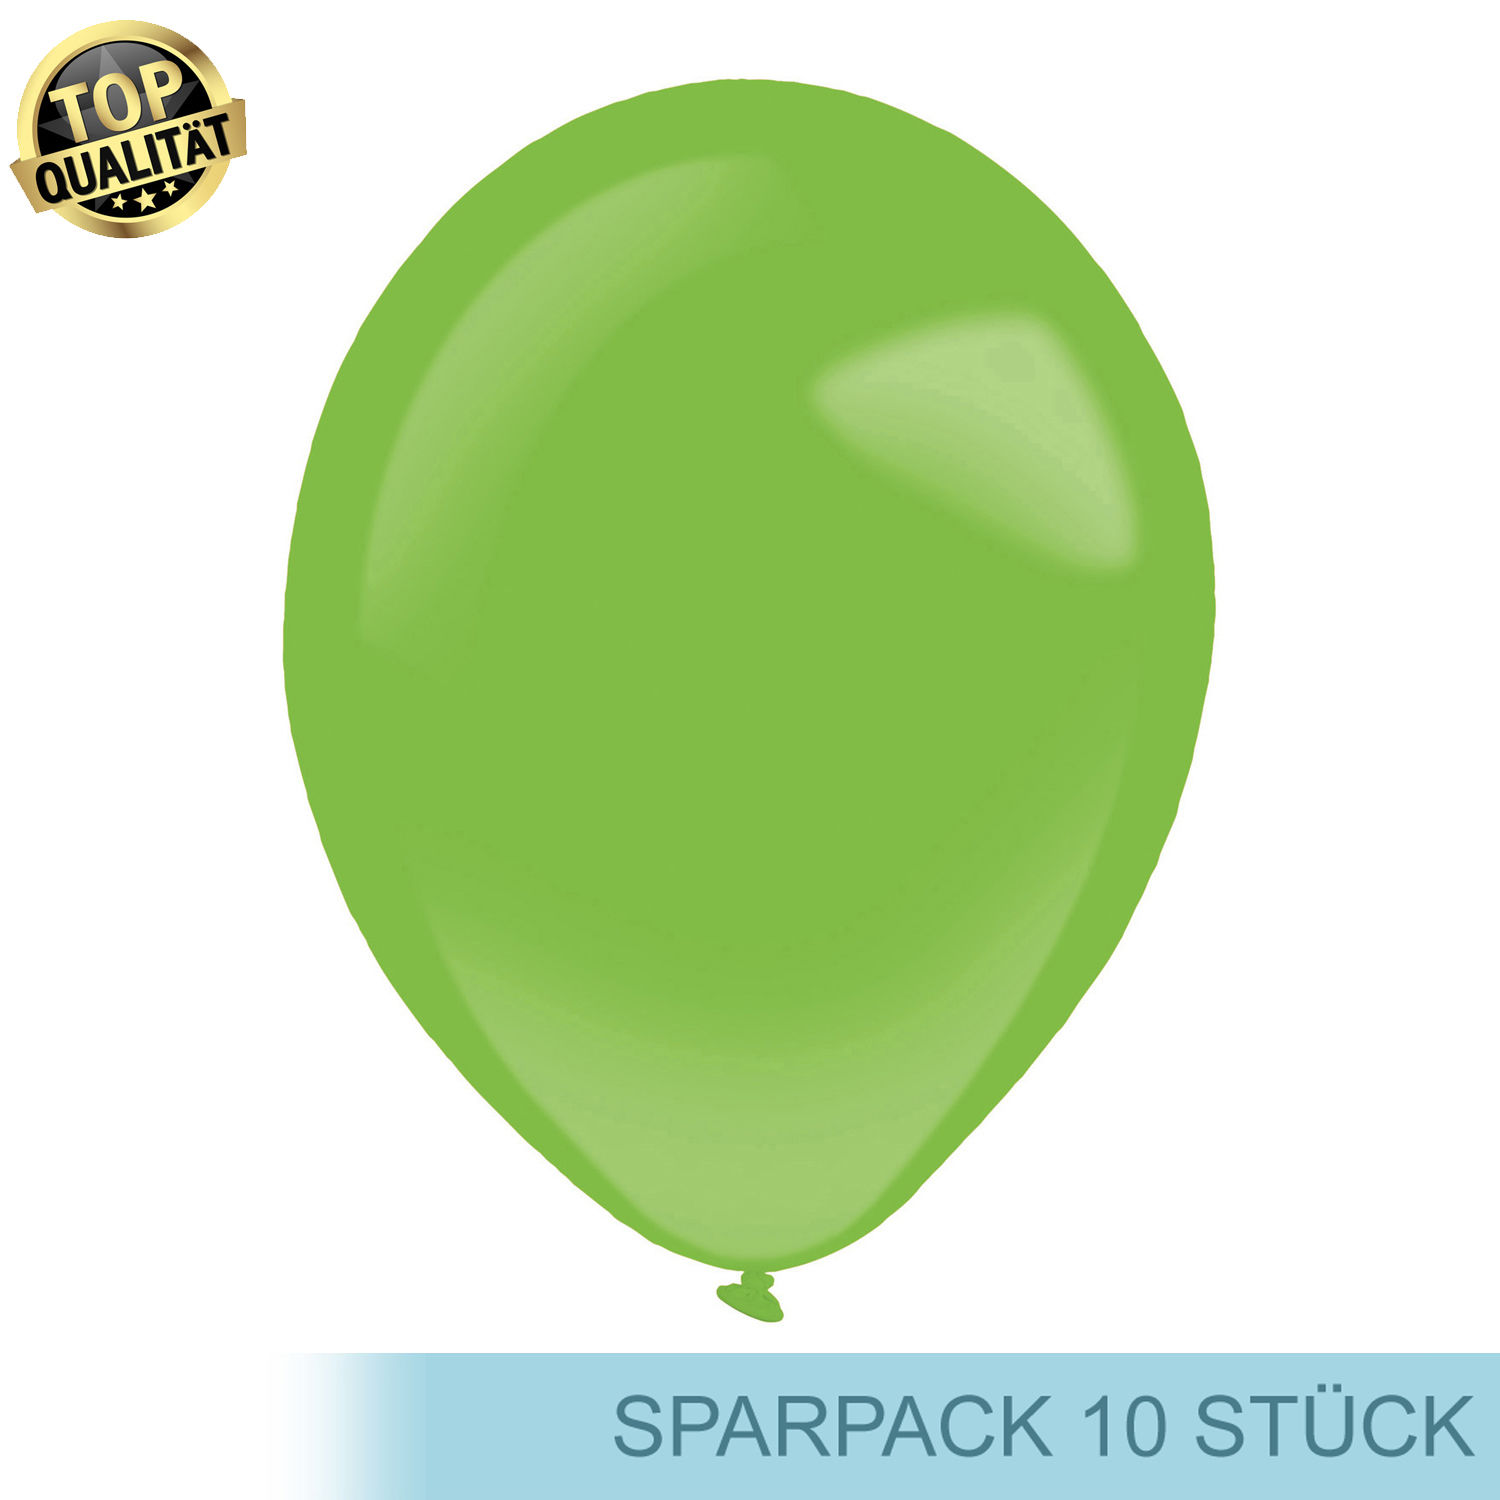 Premium Latex-Luftballon, rund, 10 Stück, ca. 27cm Durchmesser, Festliches Grün / Festive Green - Ideal für viele Dekoration